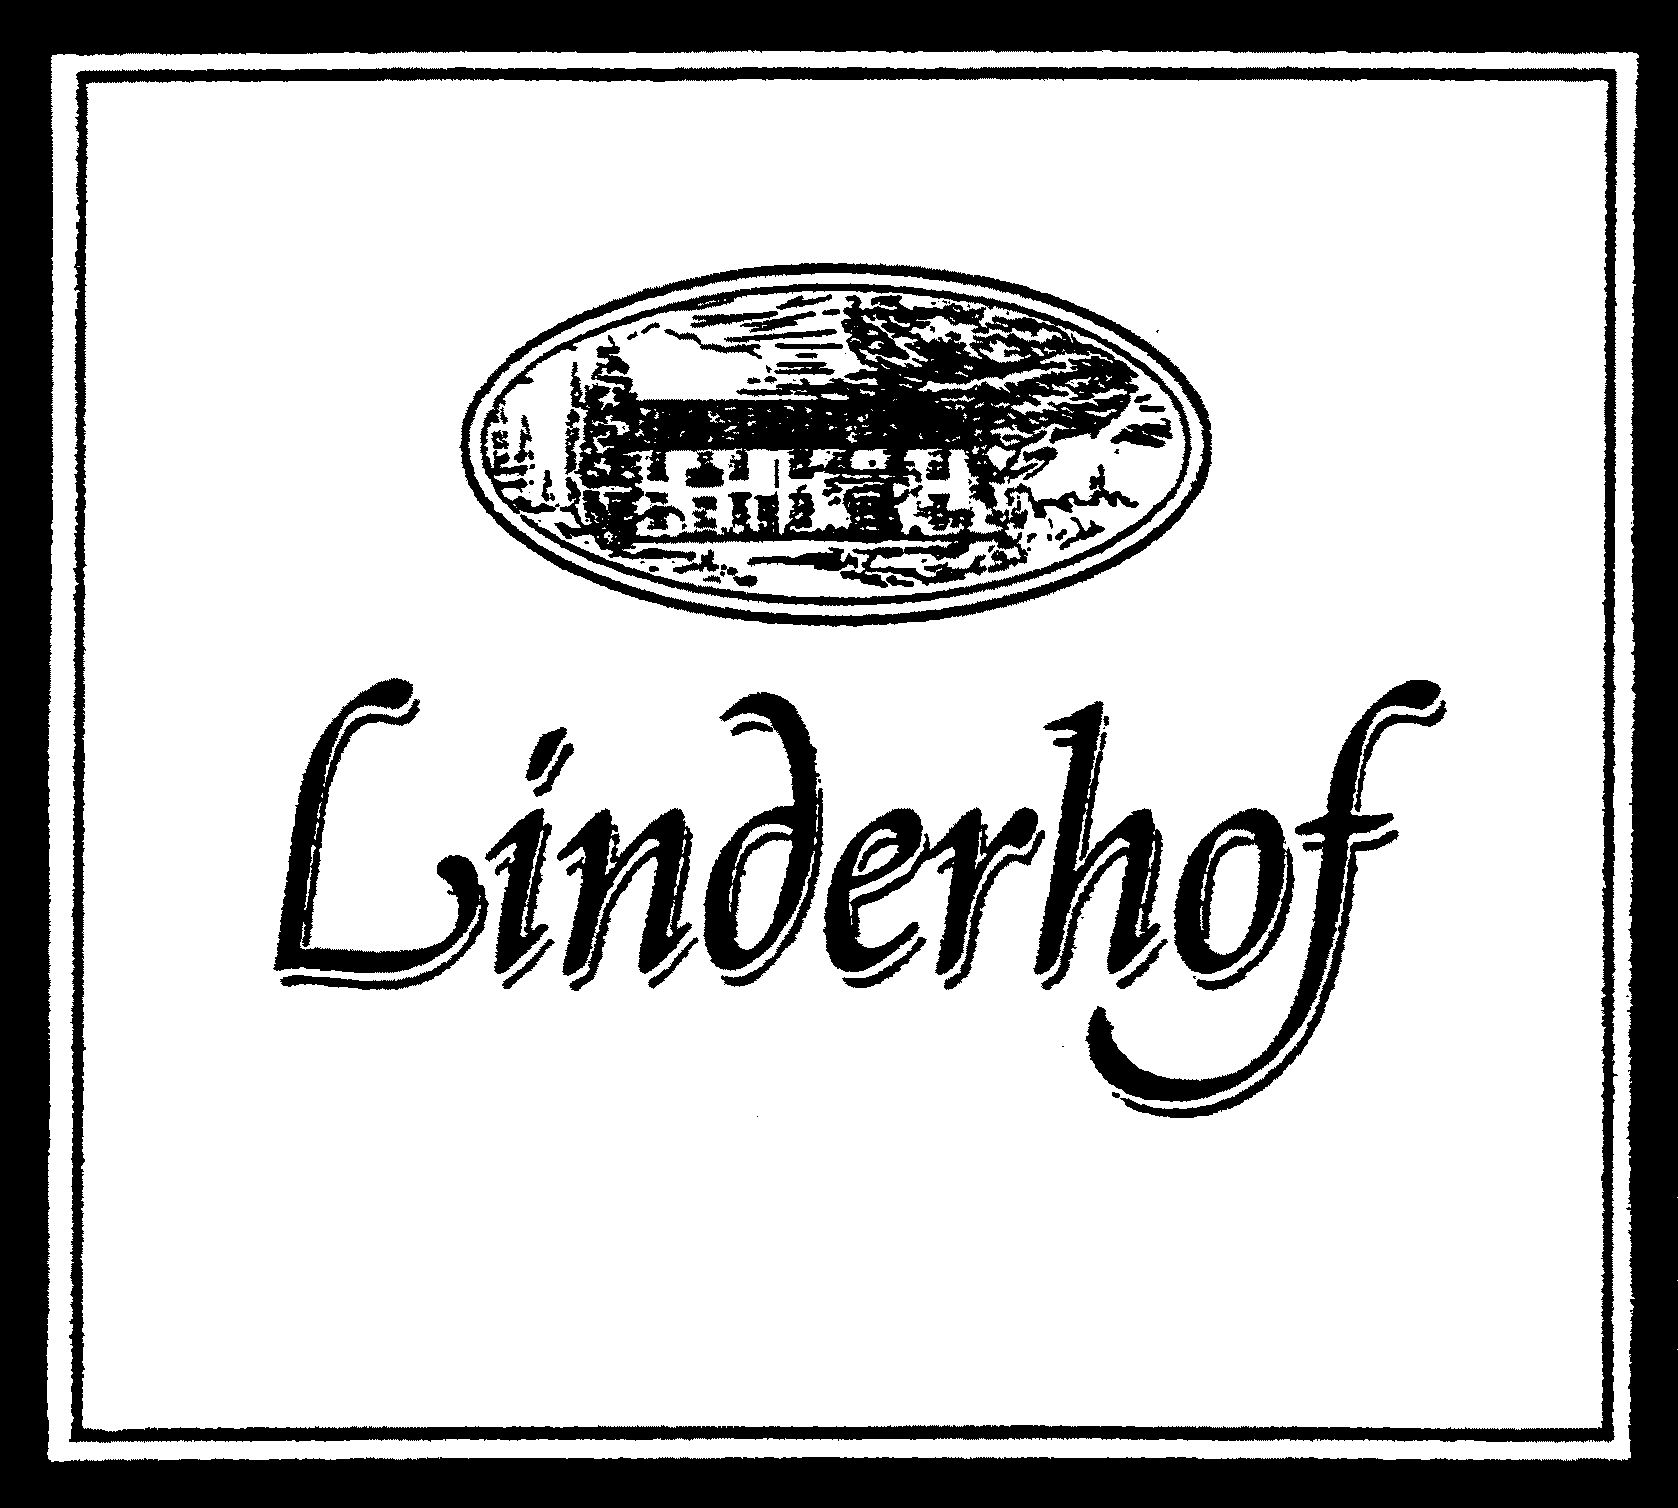 LINDERHOF